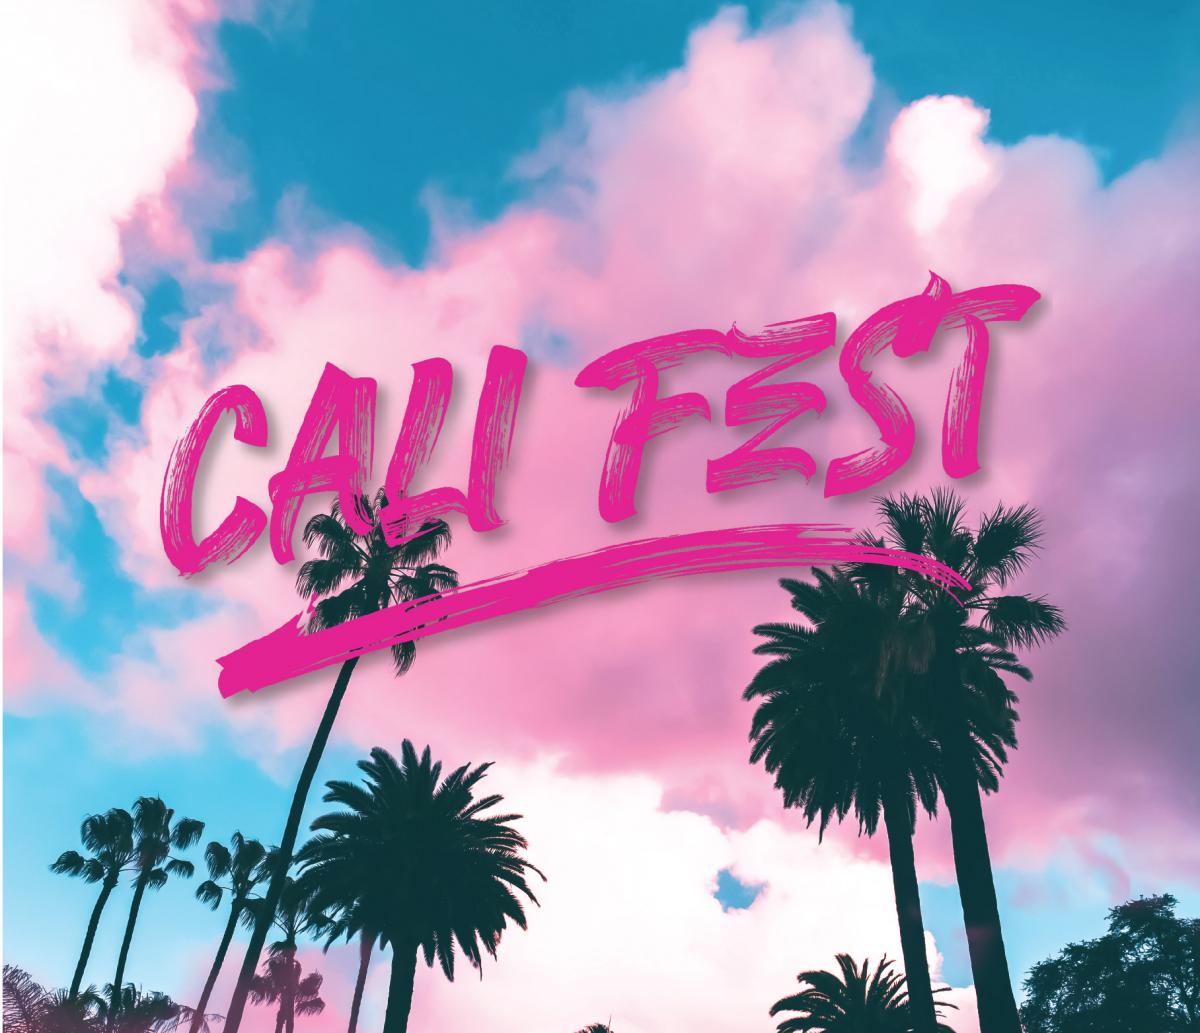 The Cali Fest